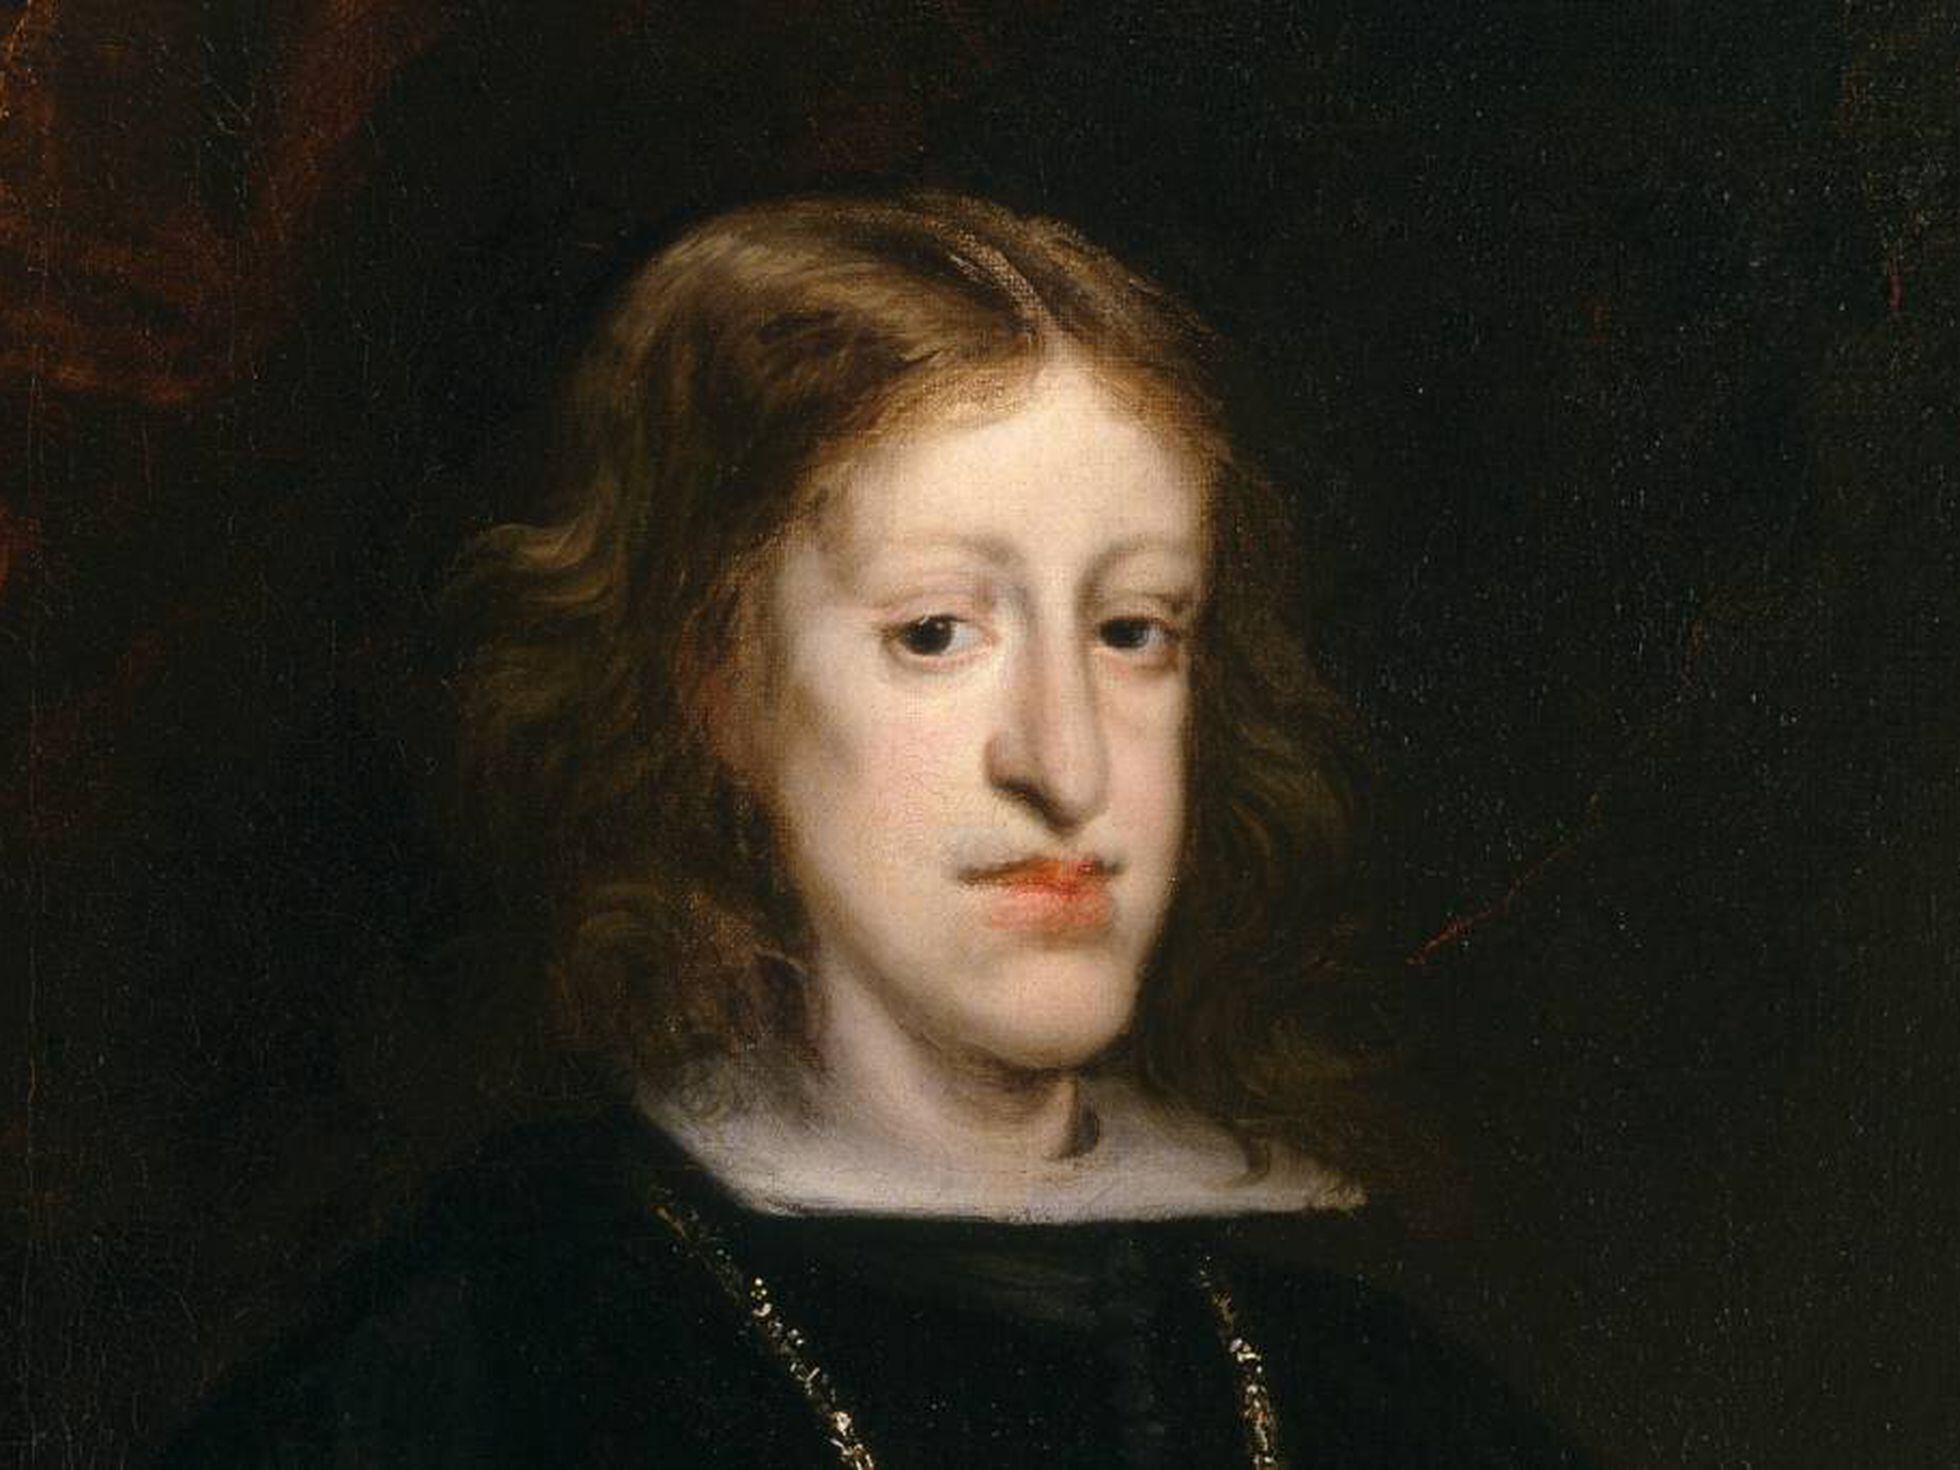 Sexo entre parentes causou deformidade facial dos reis espanhóis dos  séculos passados, Internacional